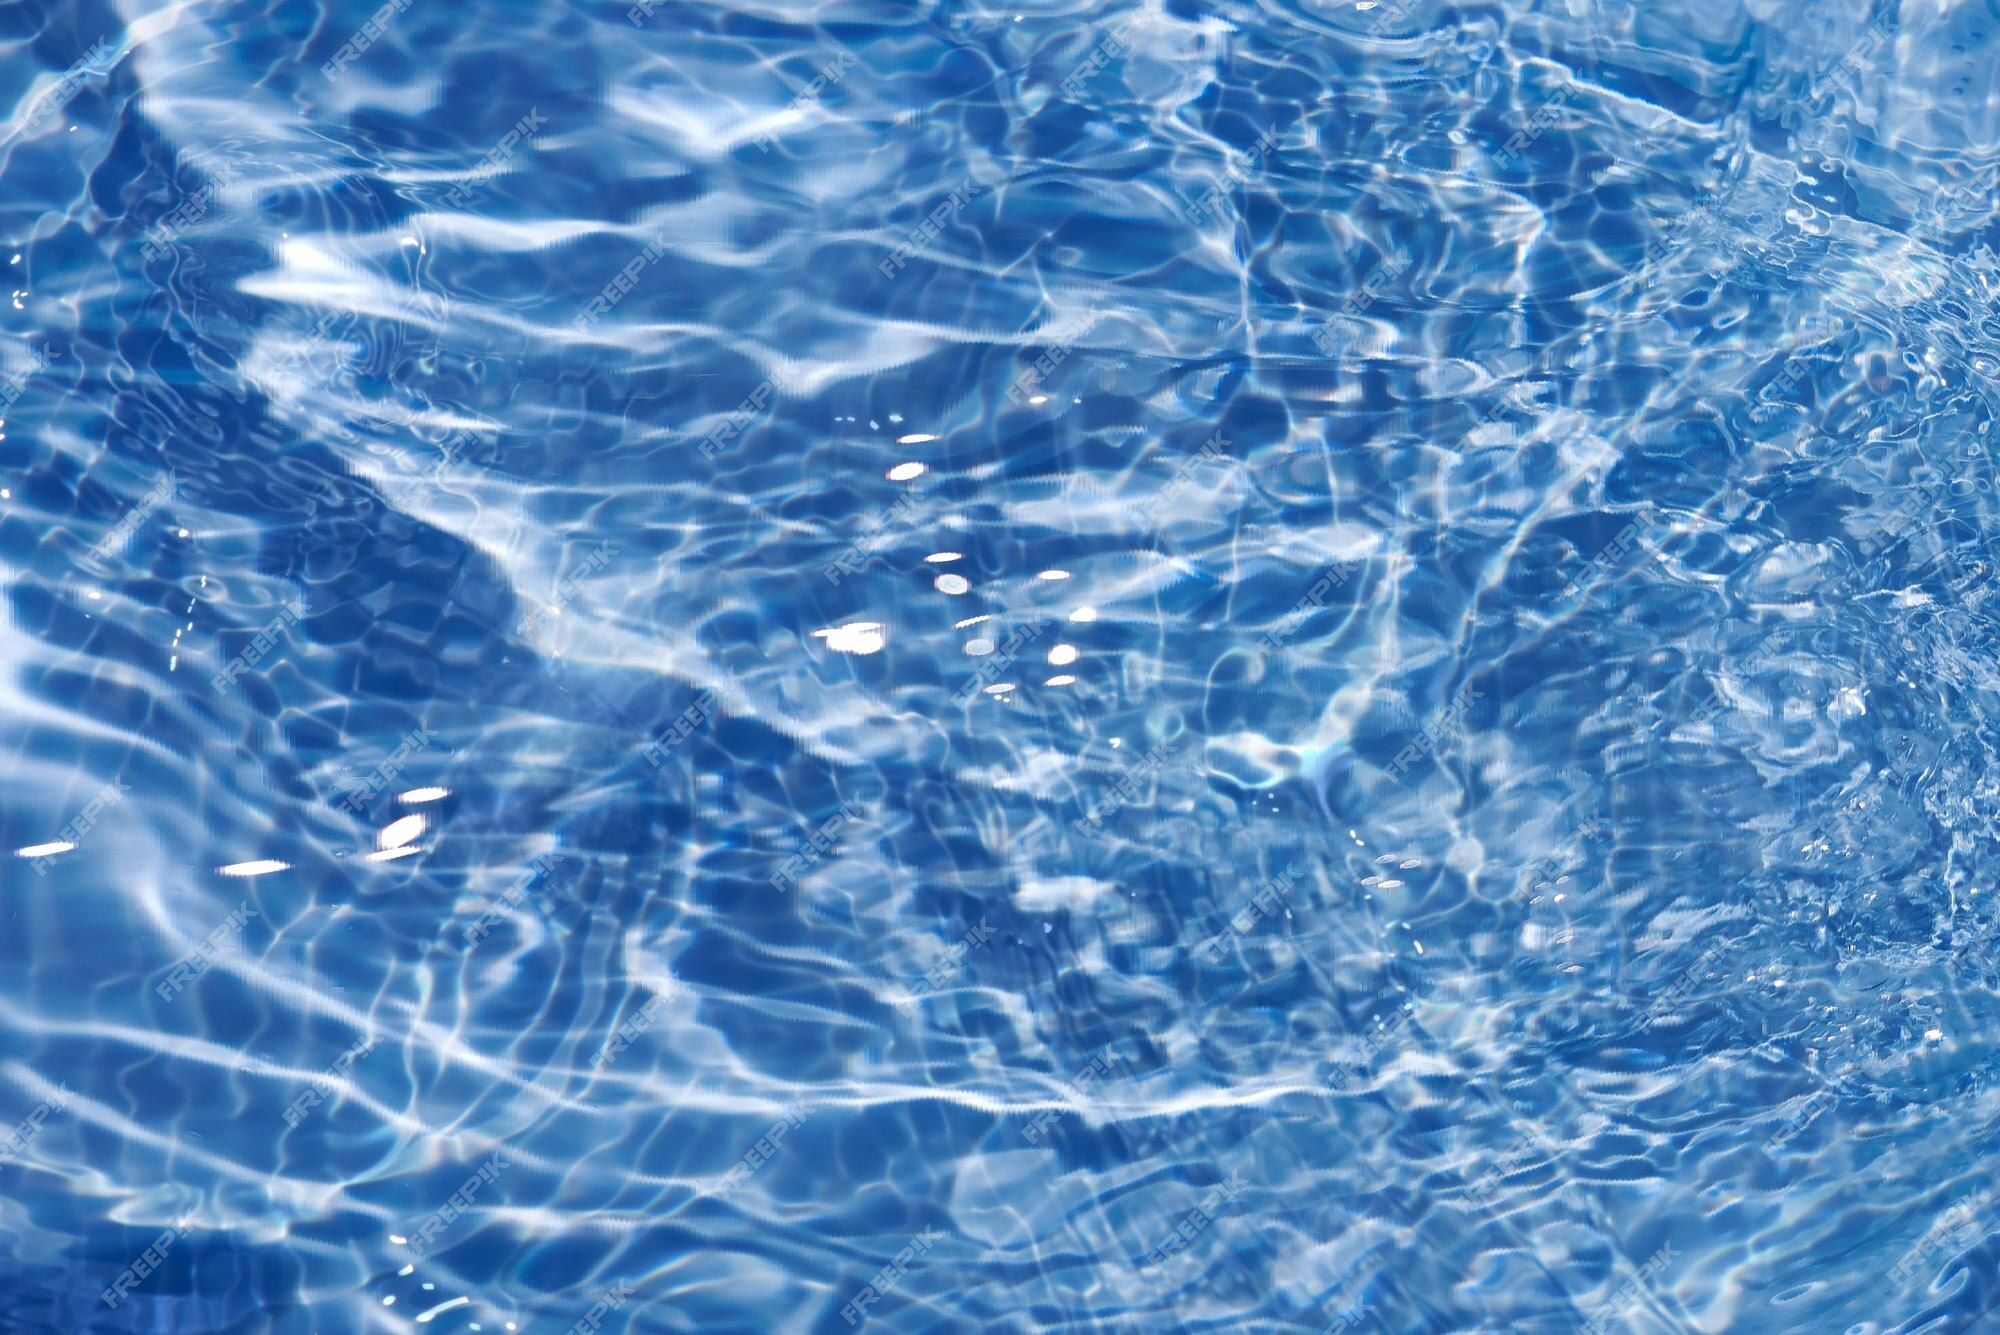  Wellen Hintergrundbild 2000x1335. Blaues wasser mit wellen auf der oberfläche unscharfes, transparentes, blau gefärbtes, klares, ruhiges wasser